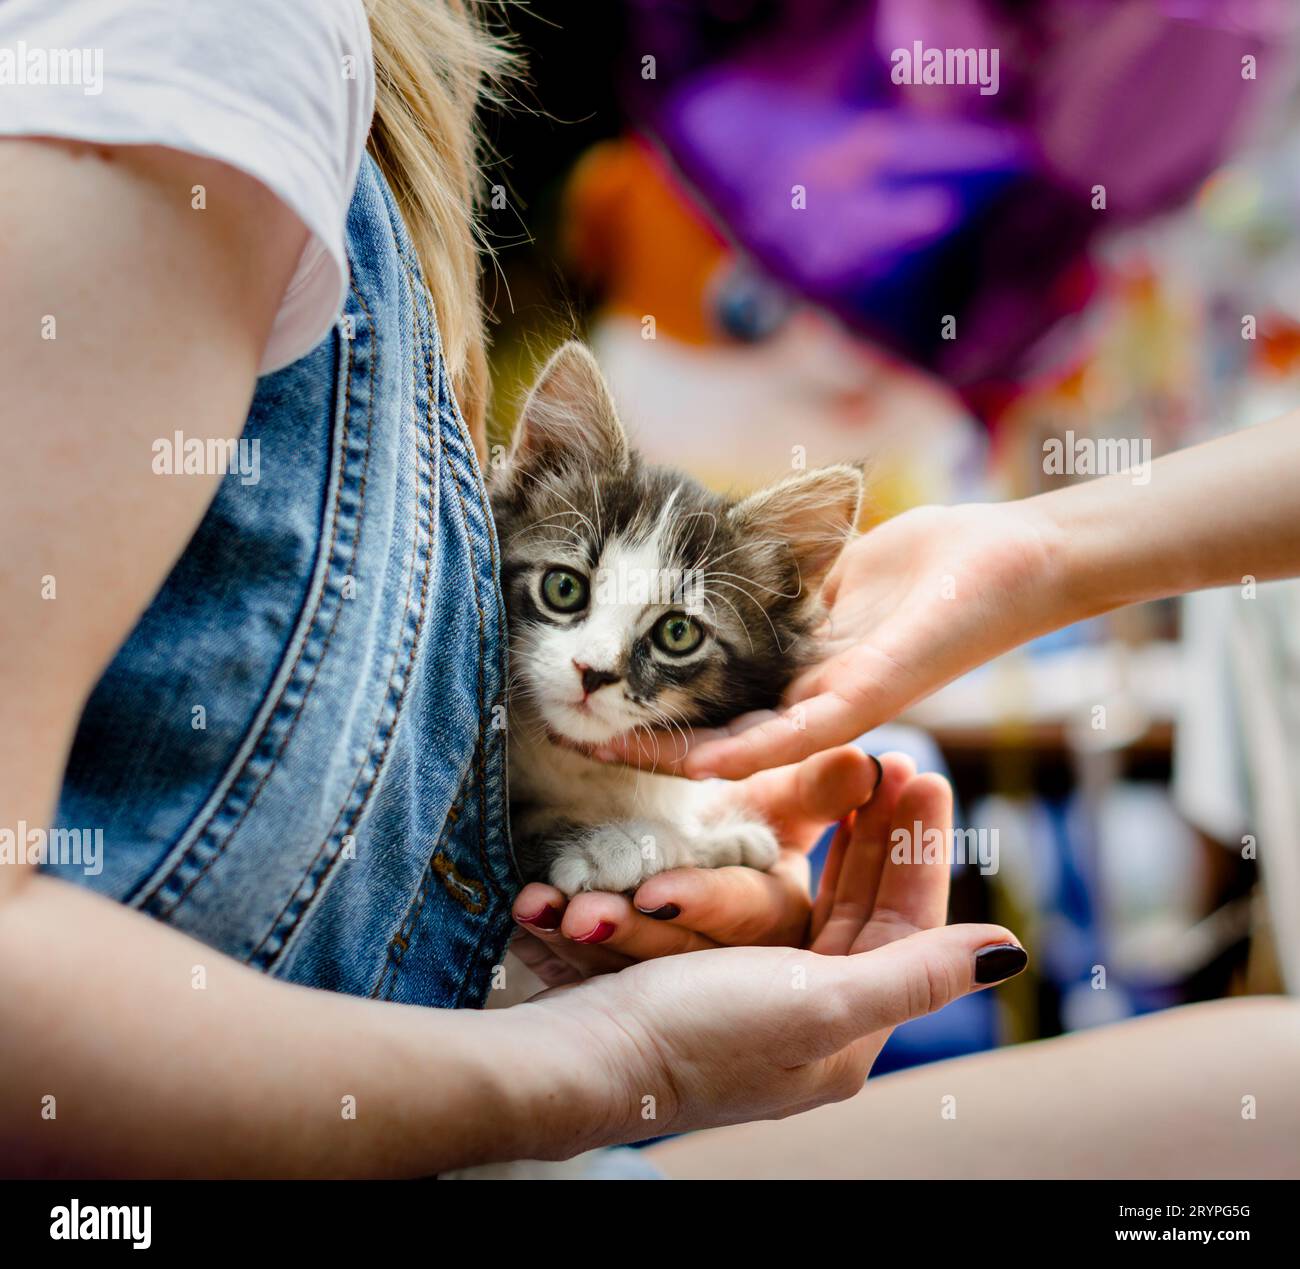 Prendersi cura degli animali domestici le mani dei bambini accarezzano un piccolo gattino a tavola Foto Stock